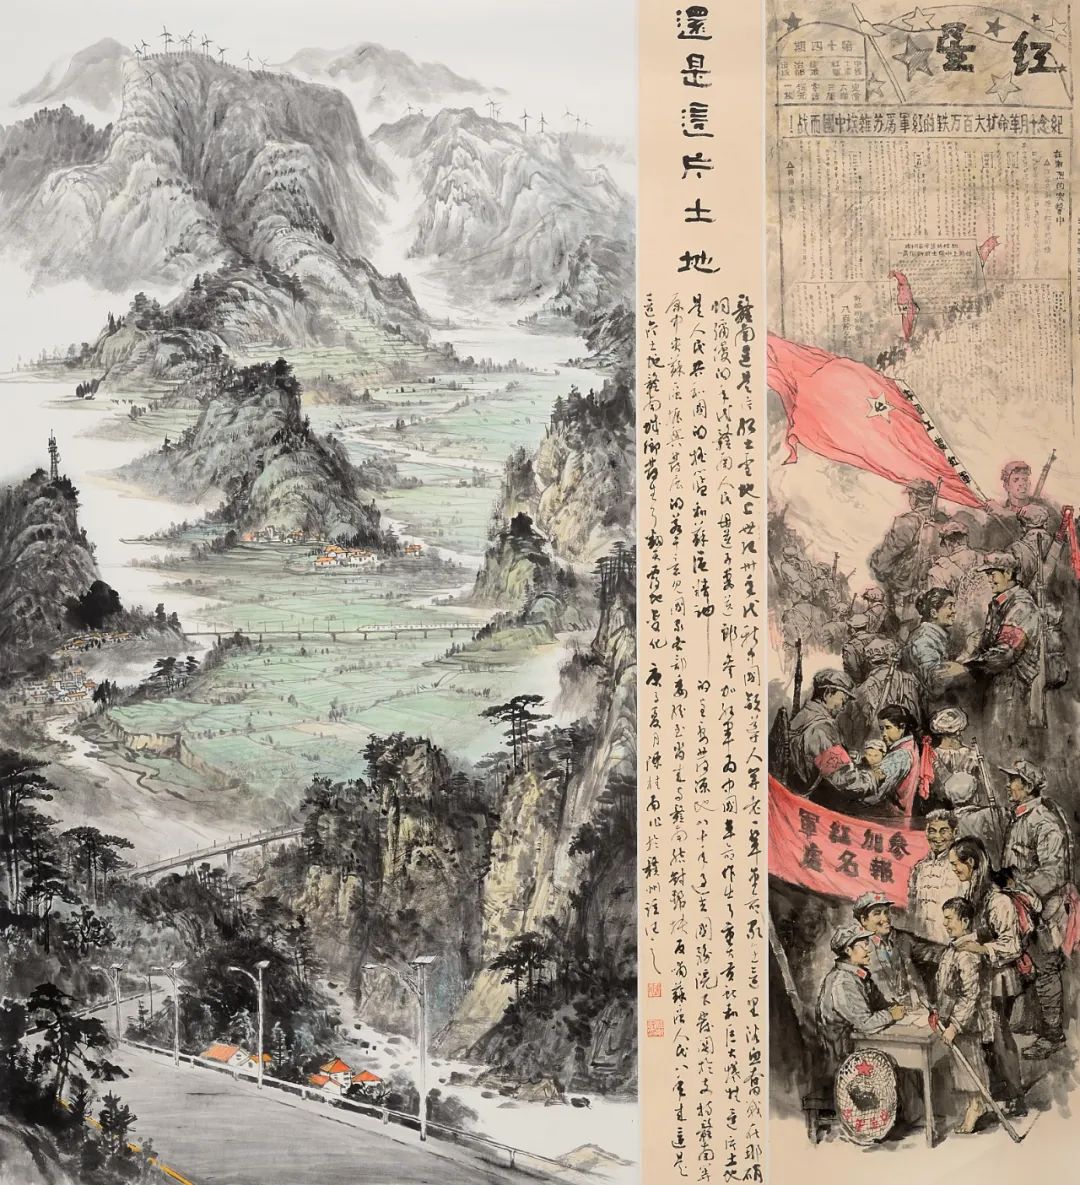 《还是这片土地》  陈桂南  中国画   180cm×160cm